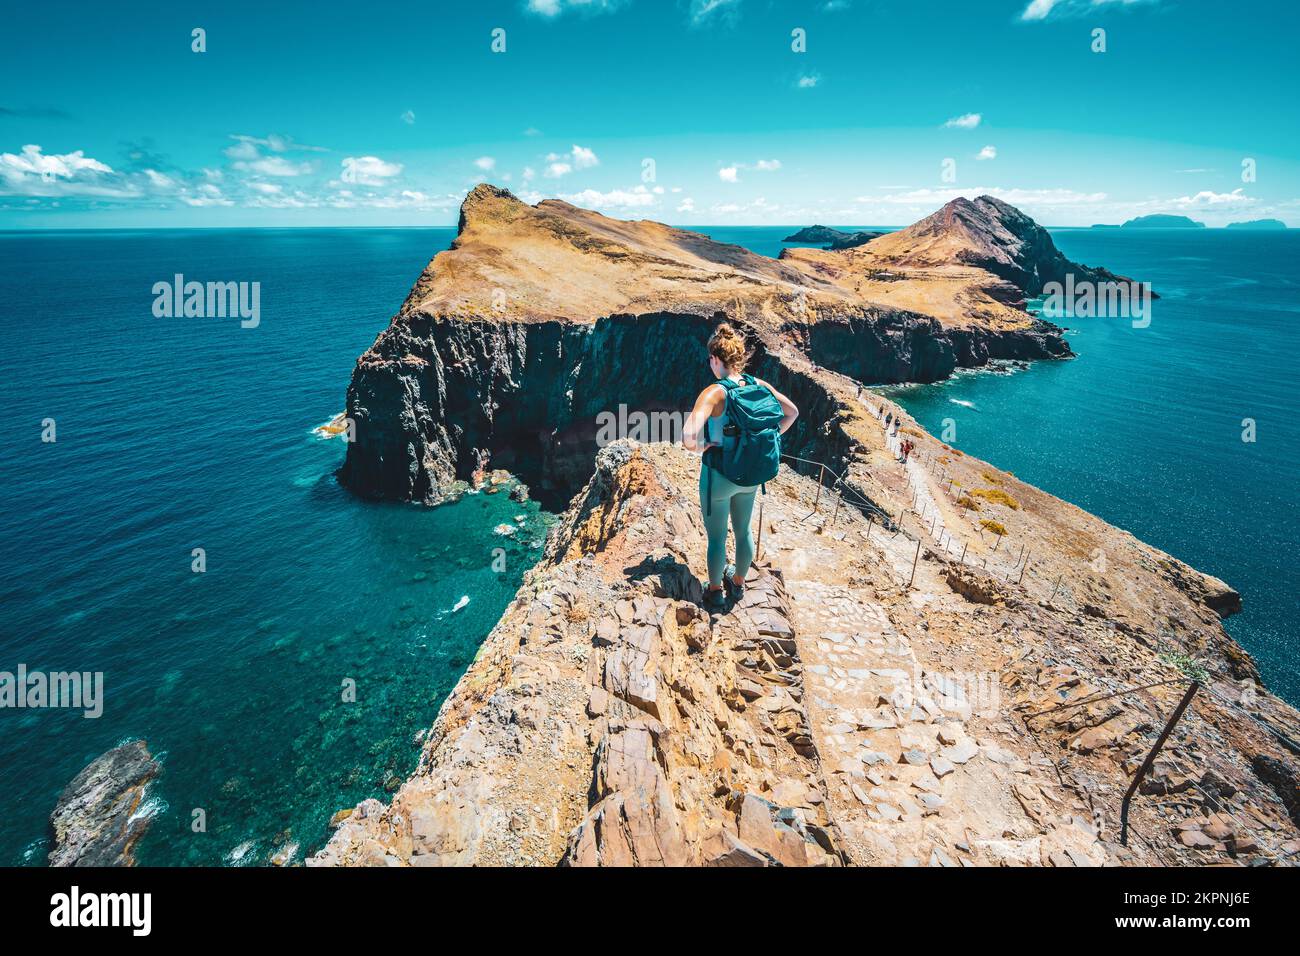 Description: Tourist enjoys the view of a strait from a steep cliff. São Lourenço, Madeira Island, Portugal, Europe. Stock Photo